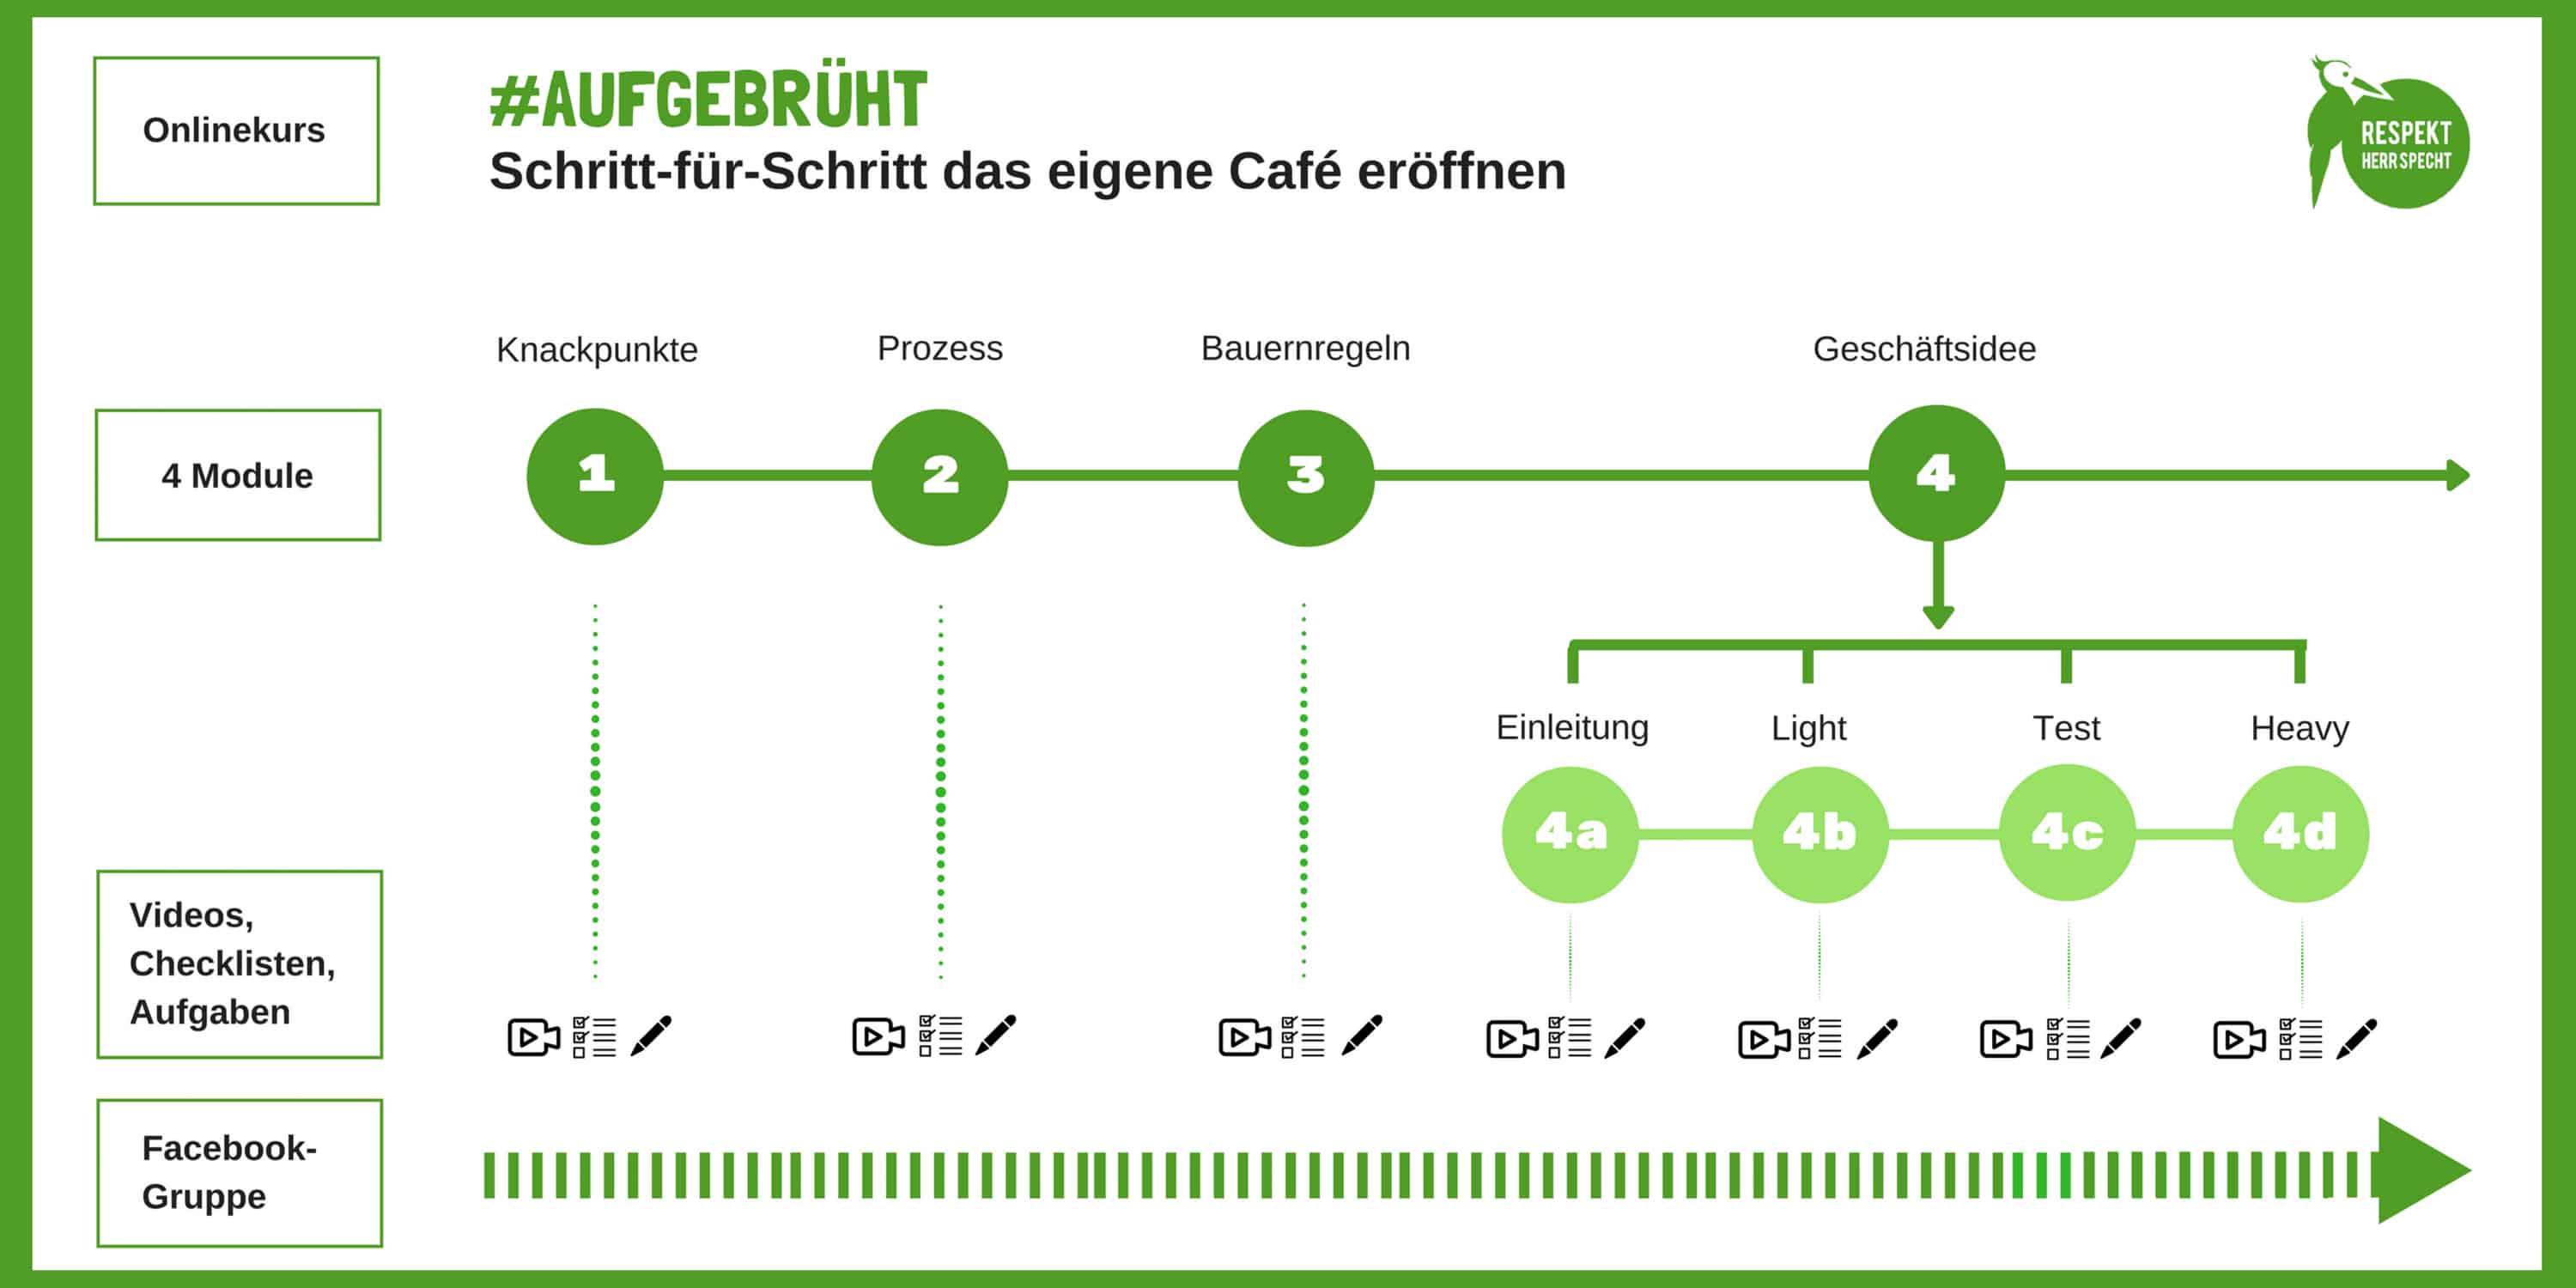 Bettina-Sturm-Respekt-Herr-Specht-aufgebrüht-cafe-eröffnen-interview-onlinekurs (5 von 5)